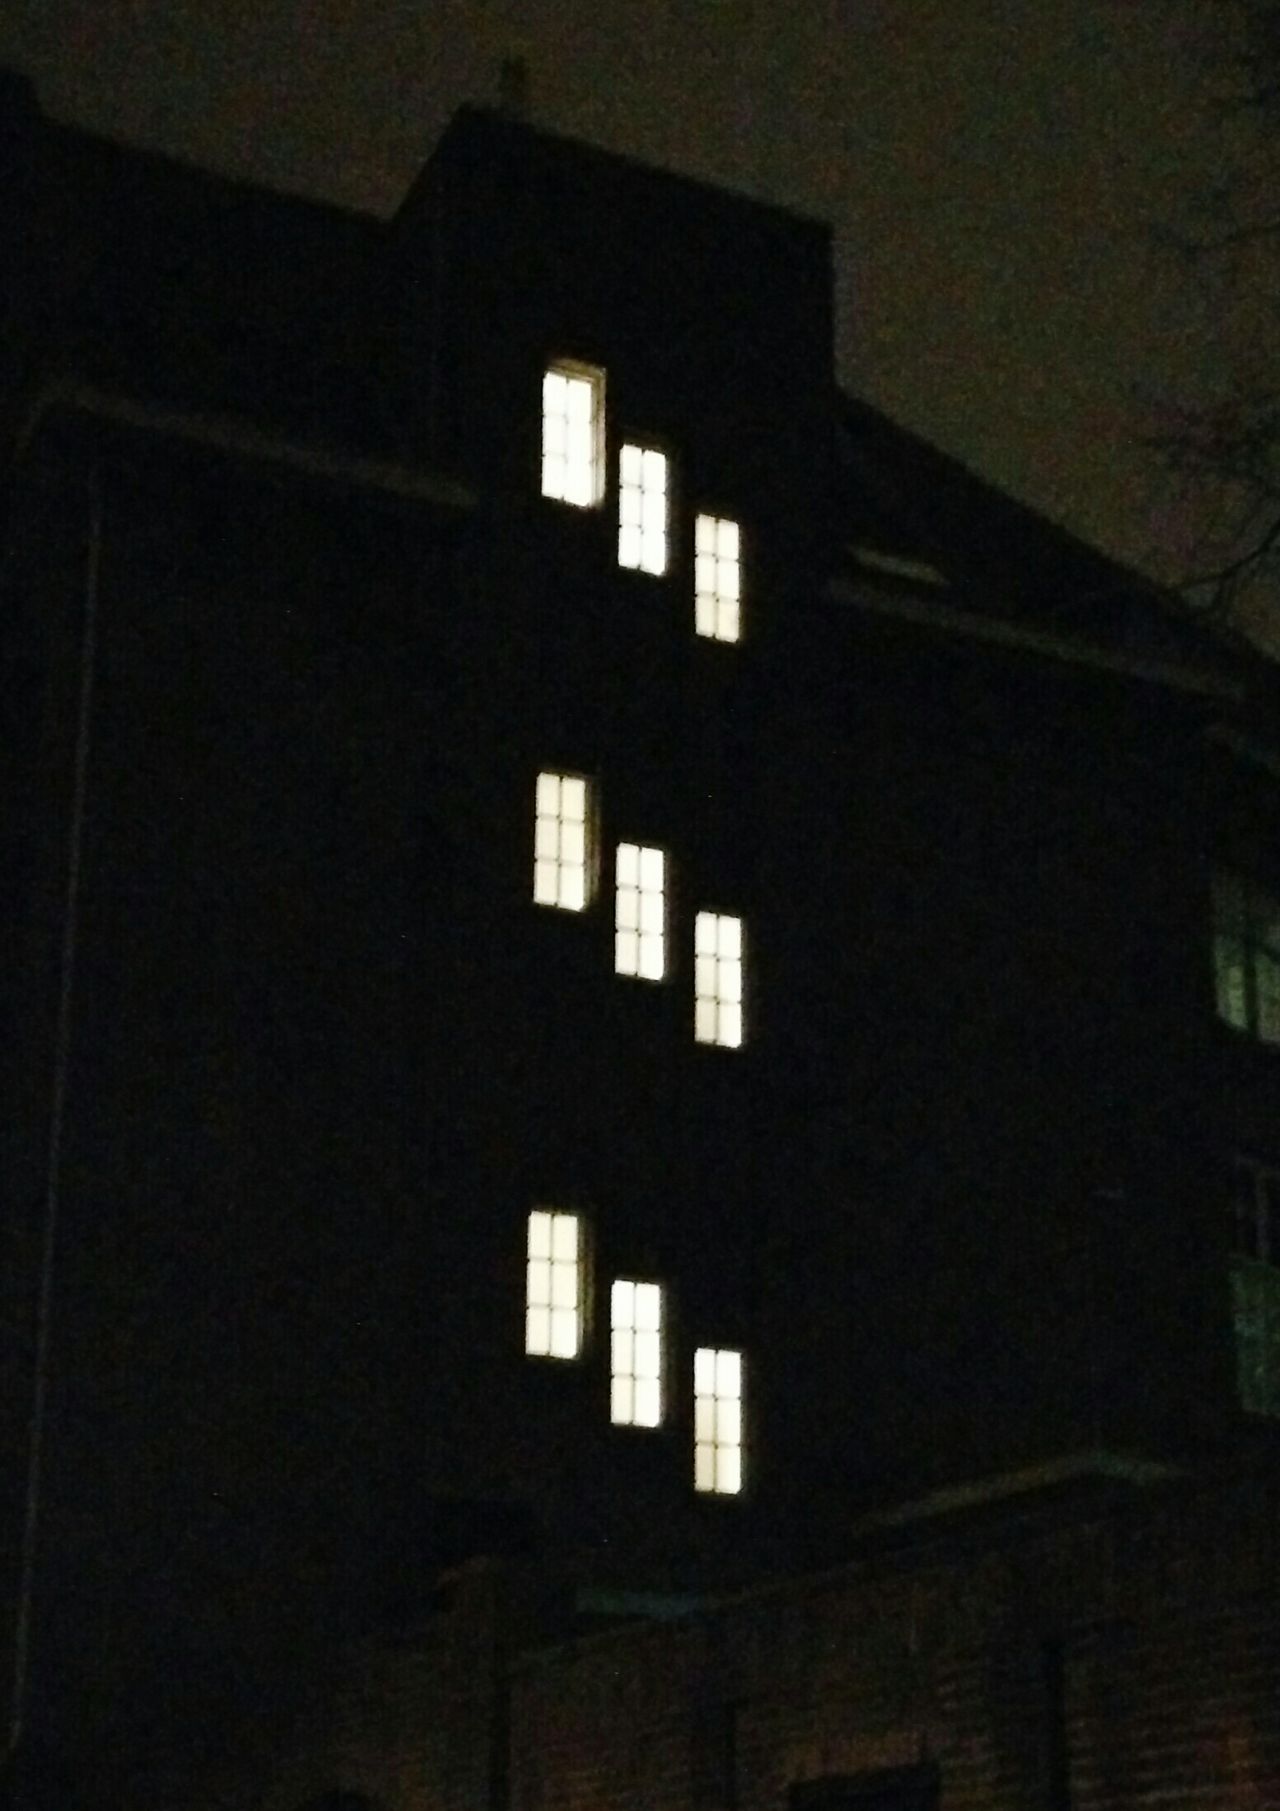 Lighted windows